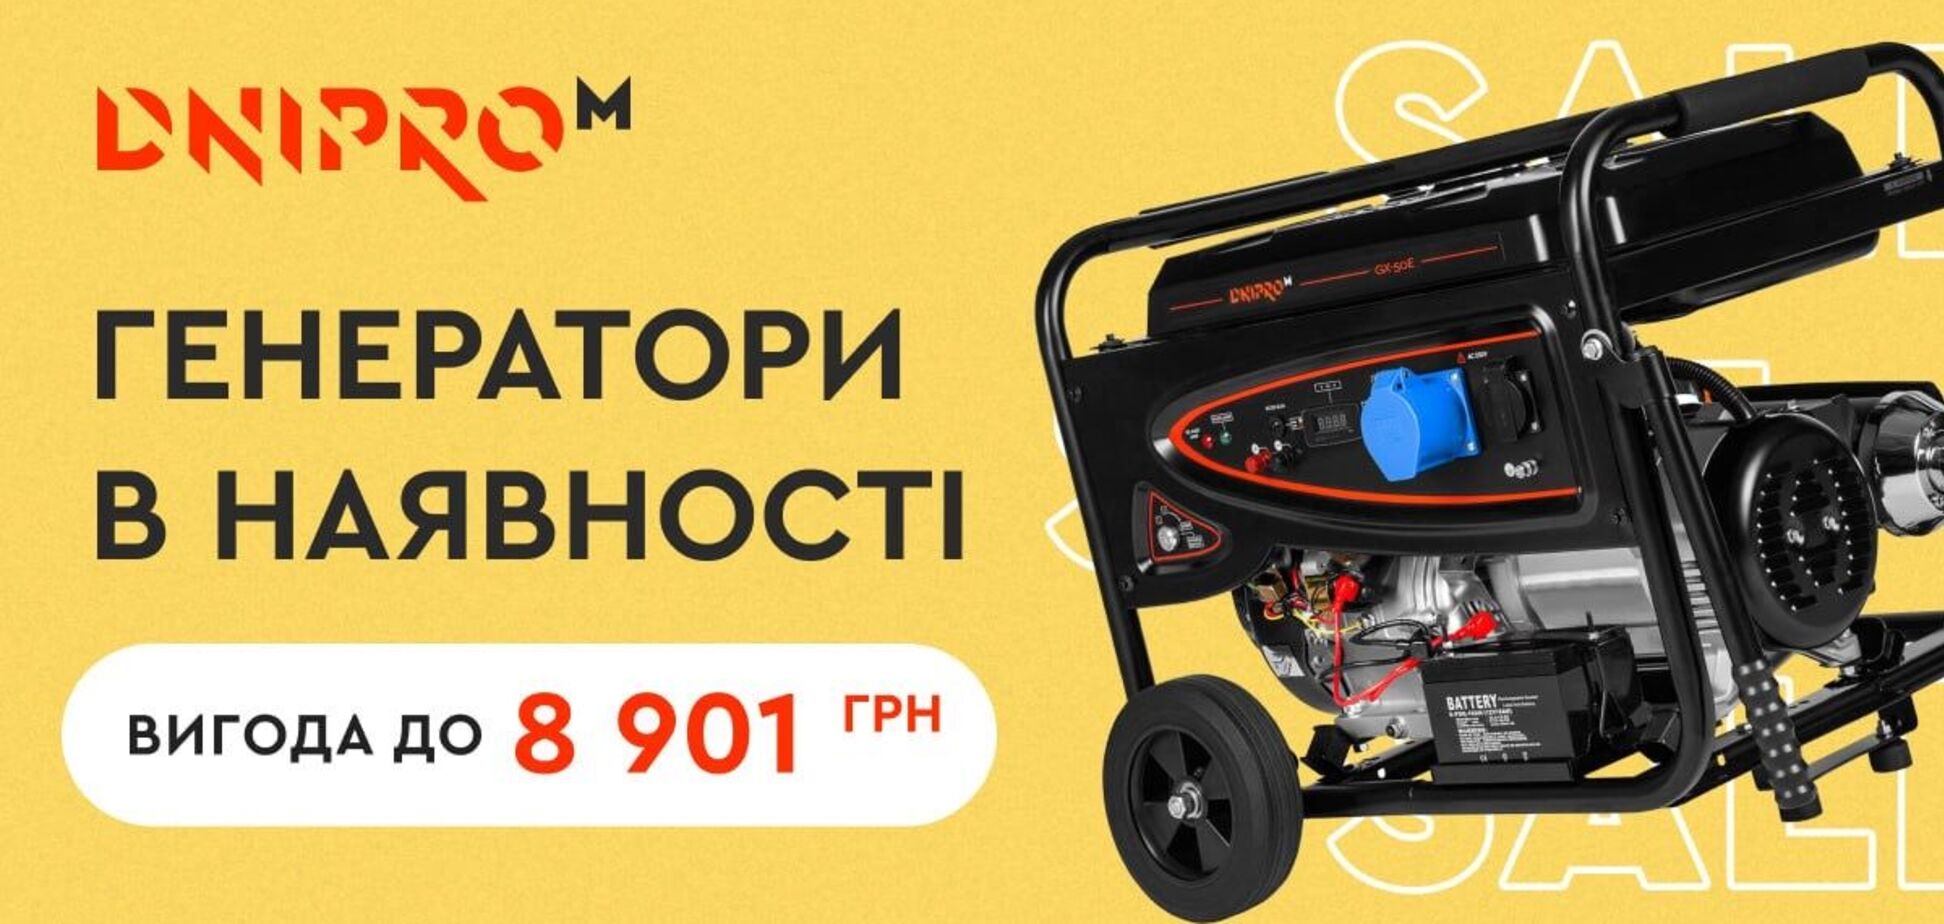 Dnipro-M анонсував продаж генераторів за зниженою ціною